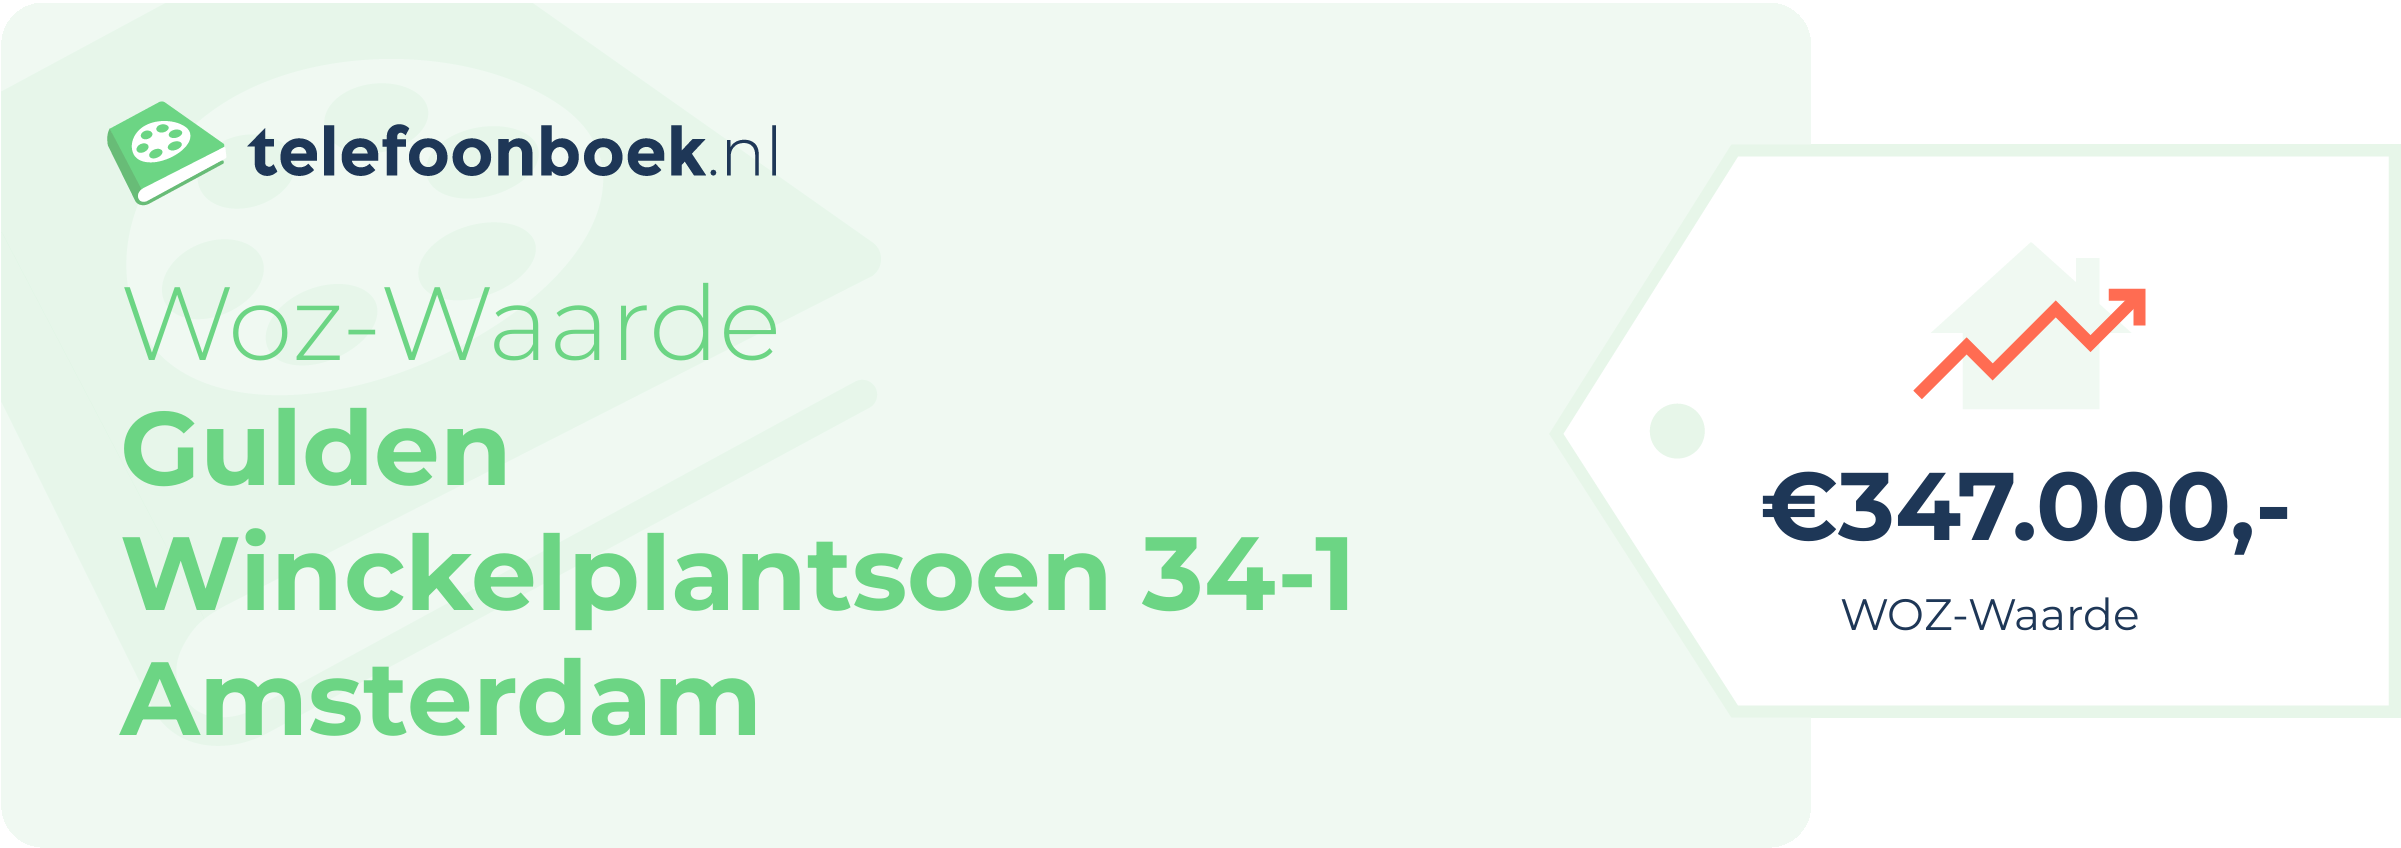 WOZ-waarde Gulden Winckelplantsoen 34-1 Amsterdam